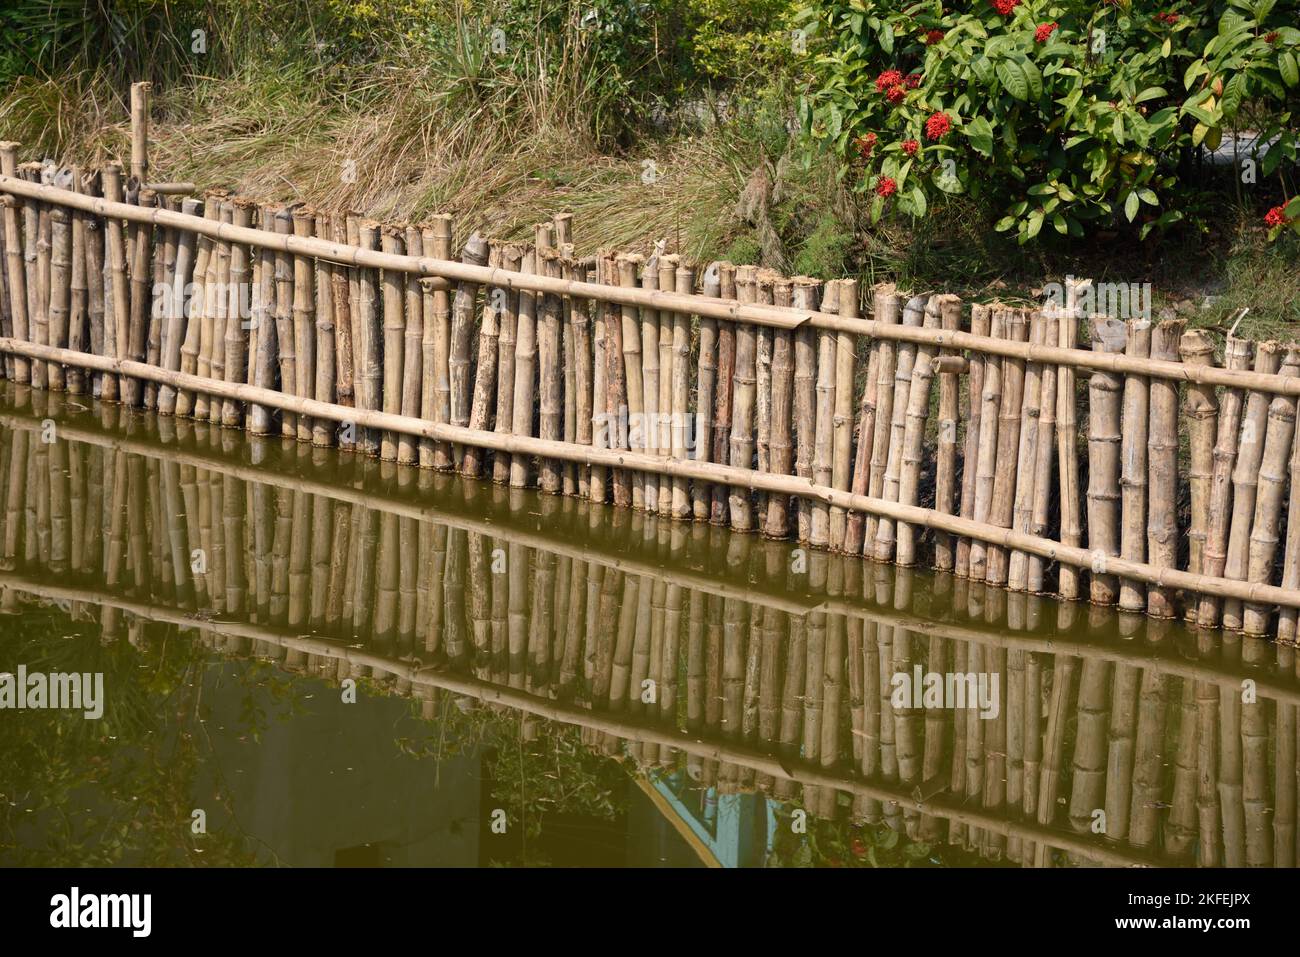 Bamboo fence, Dobanki Camp, Sunderban, South 24 Pargana, West Bengal, India Stock Photo